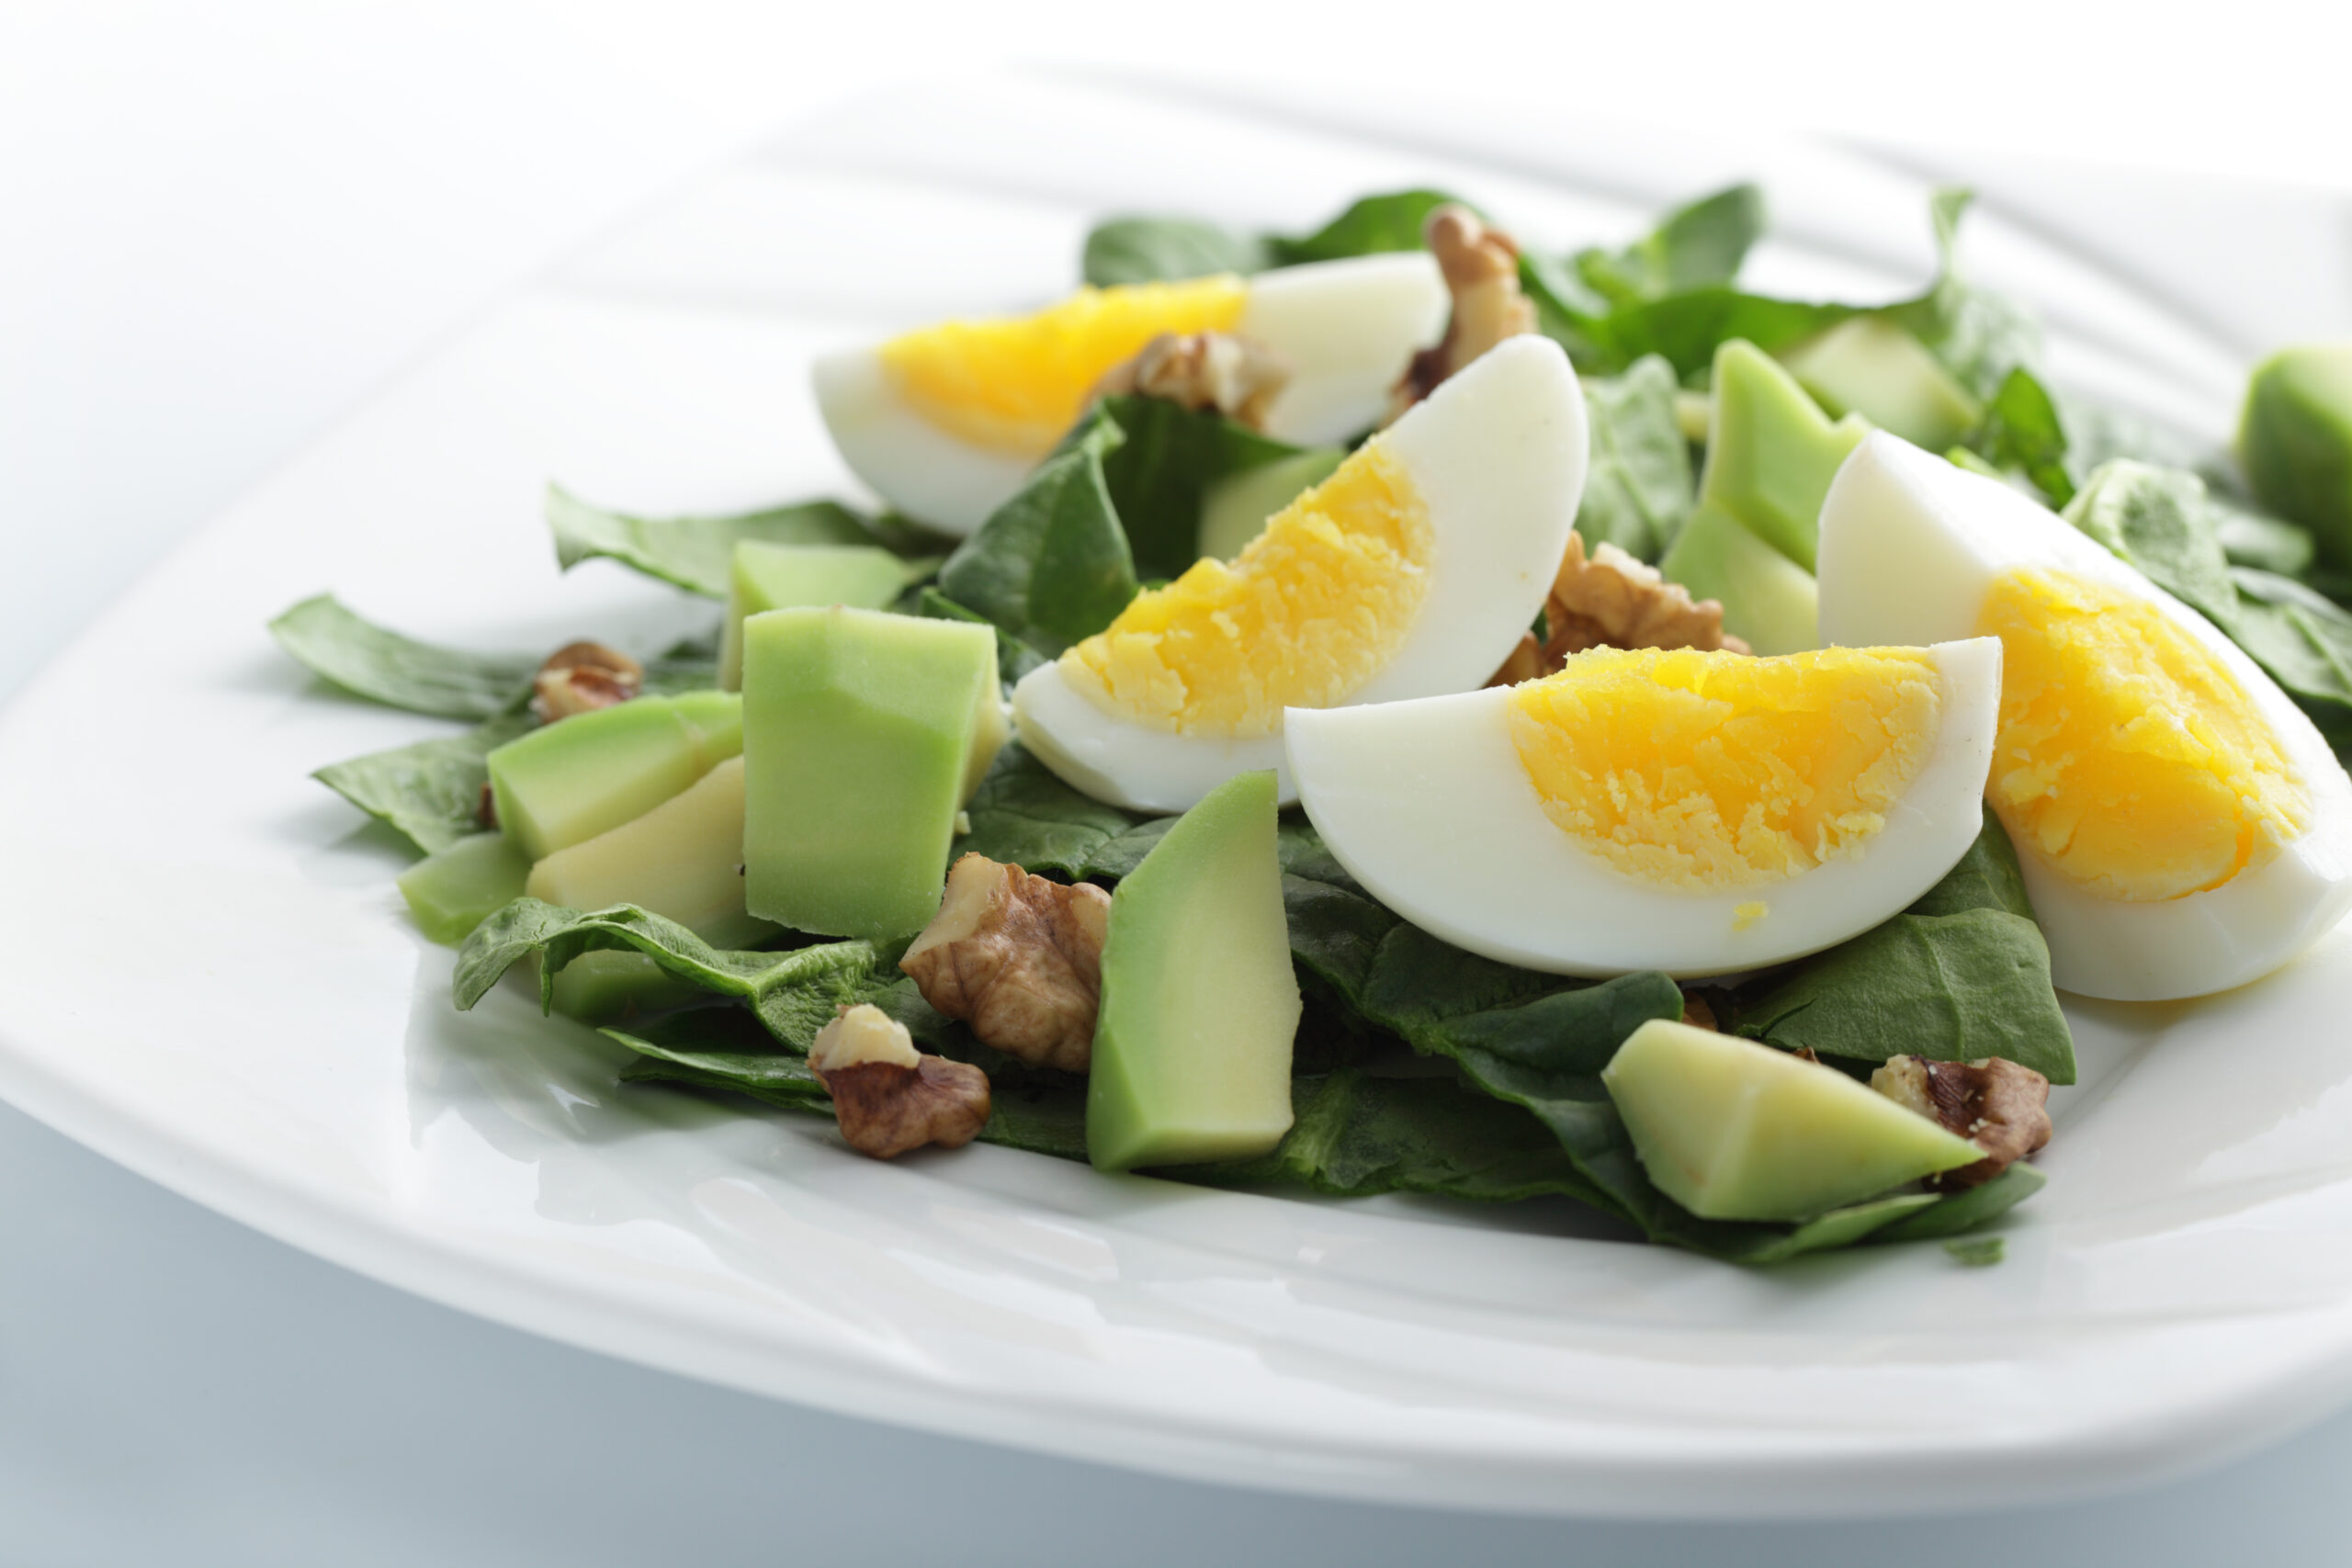 anti inflammatory foods, eggs, walnuts